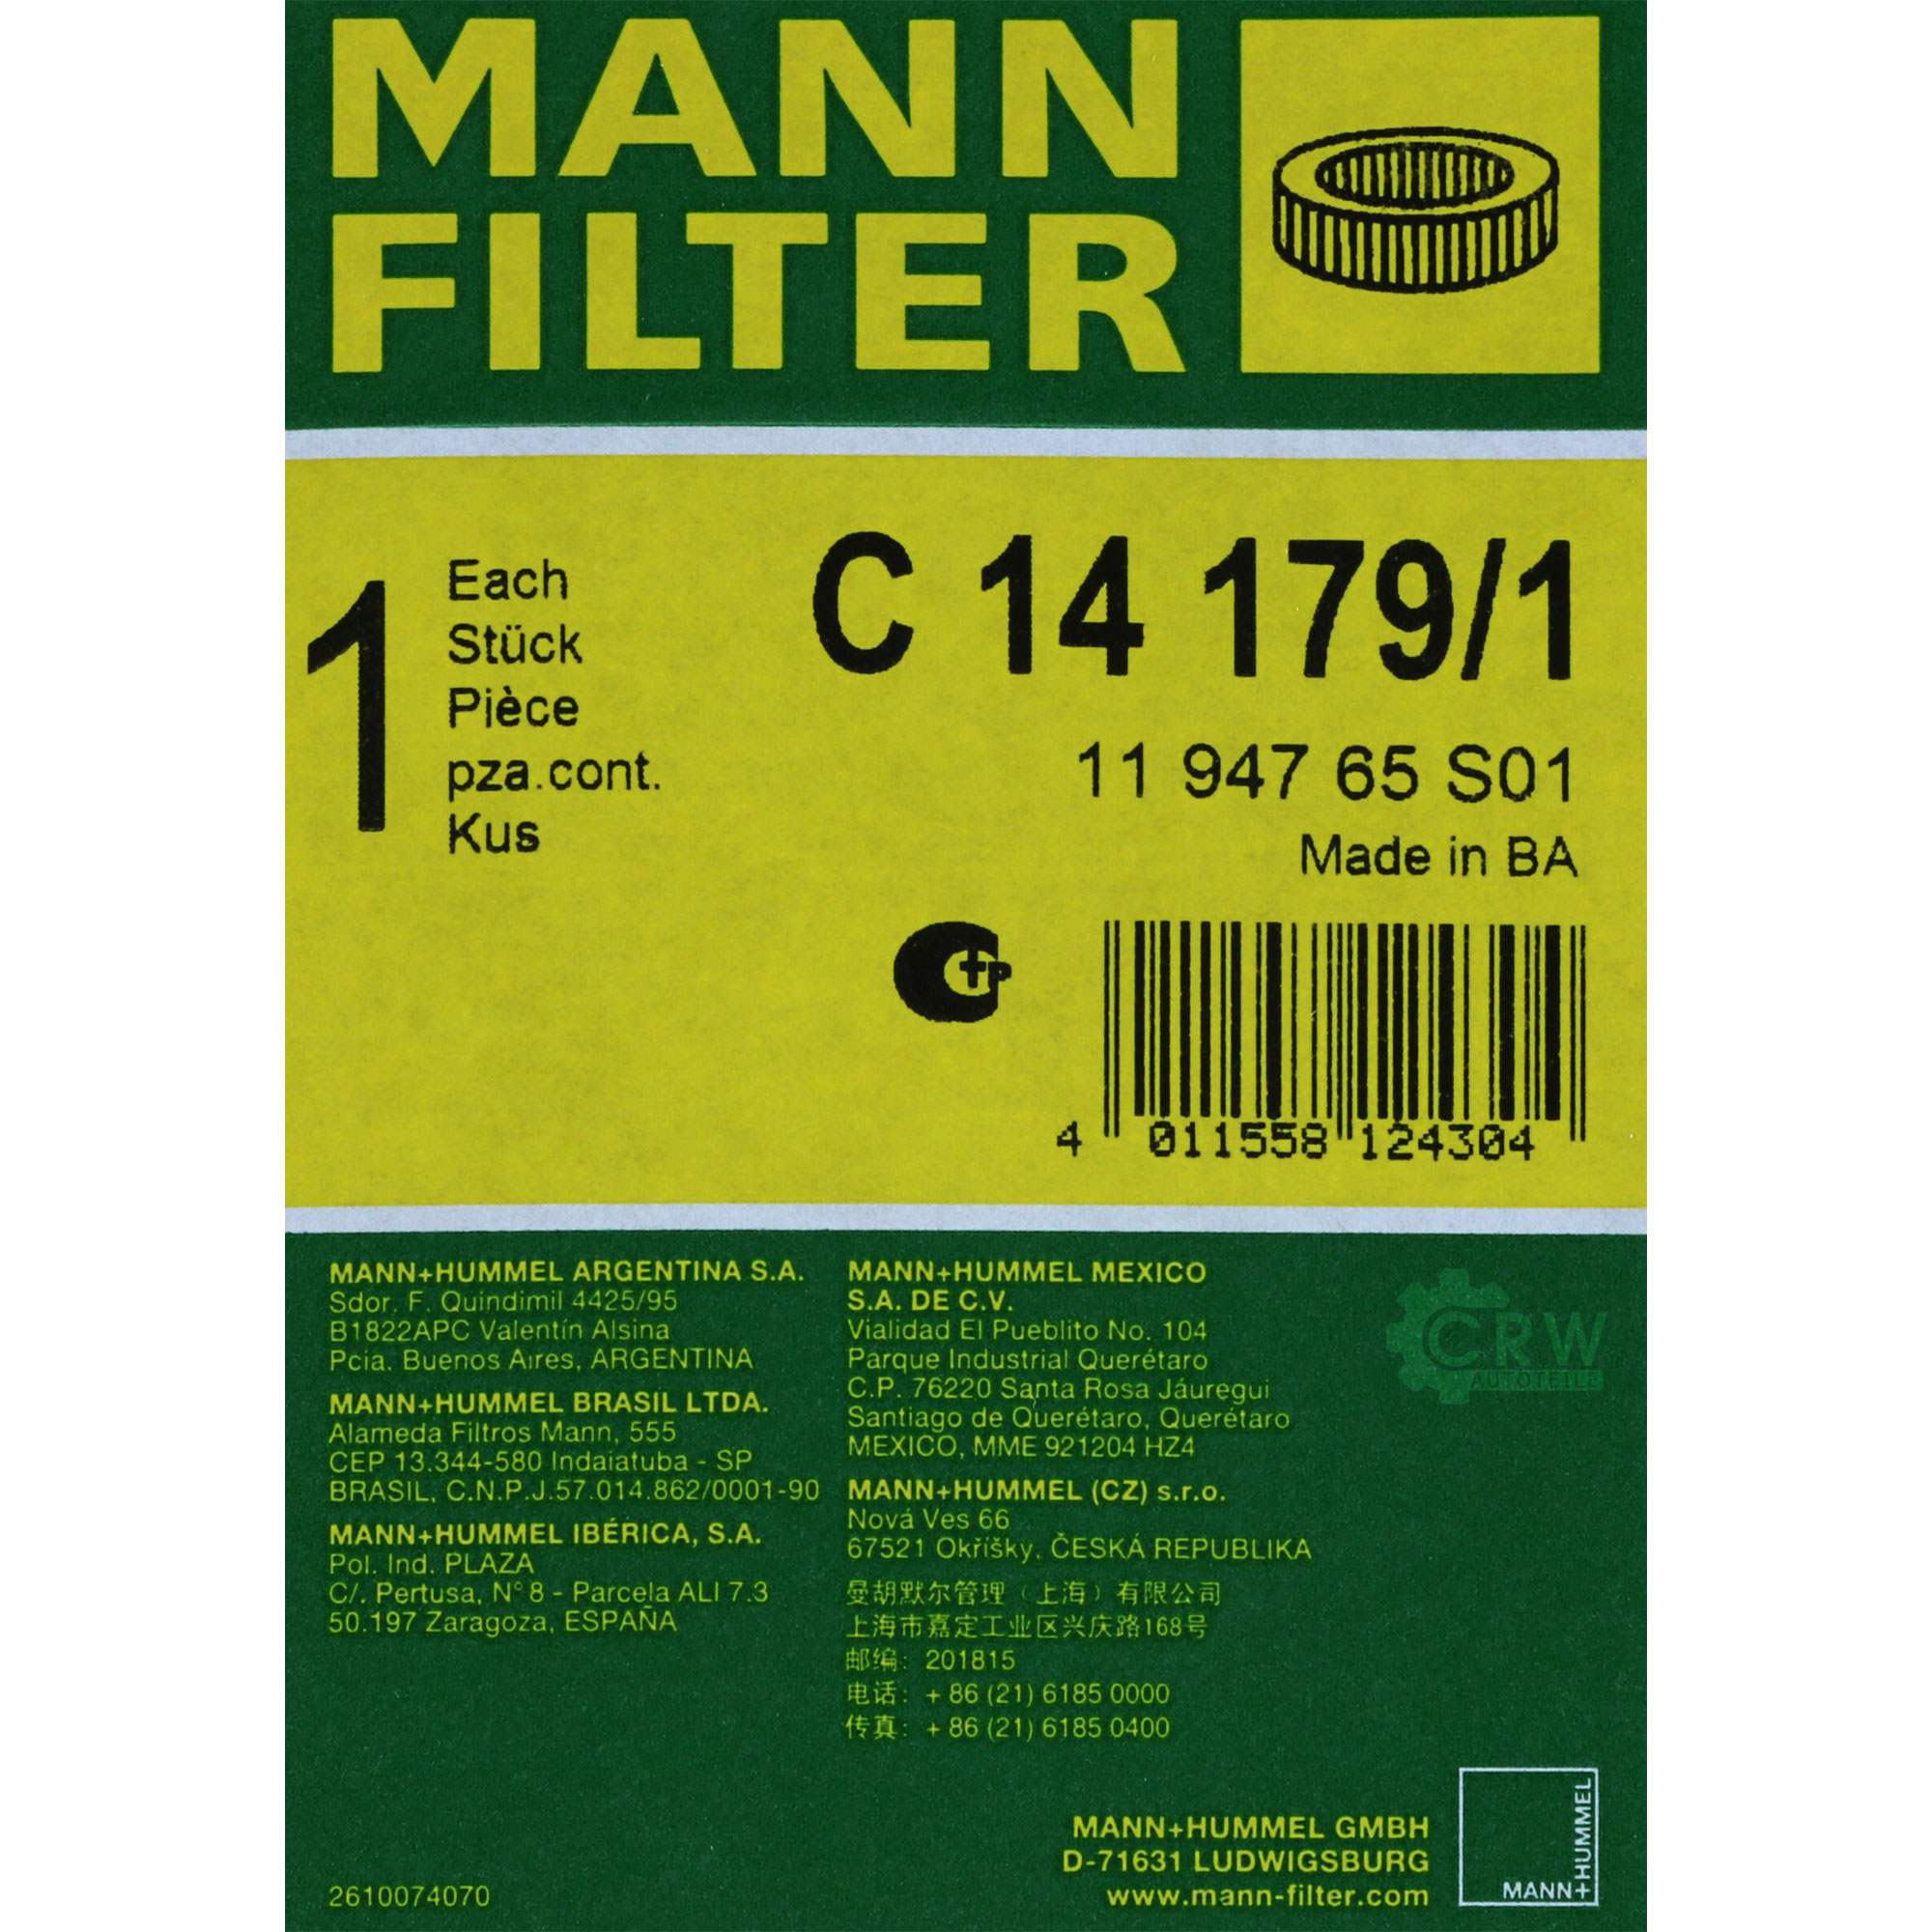 MANN-FILTER Luftfilter für Land Rover 88/109 MK III Geländewagen Geschlossen